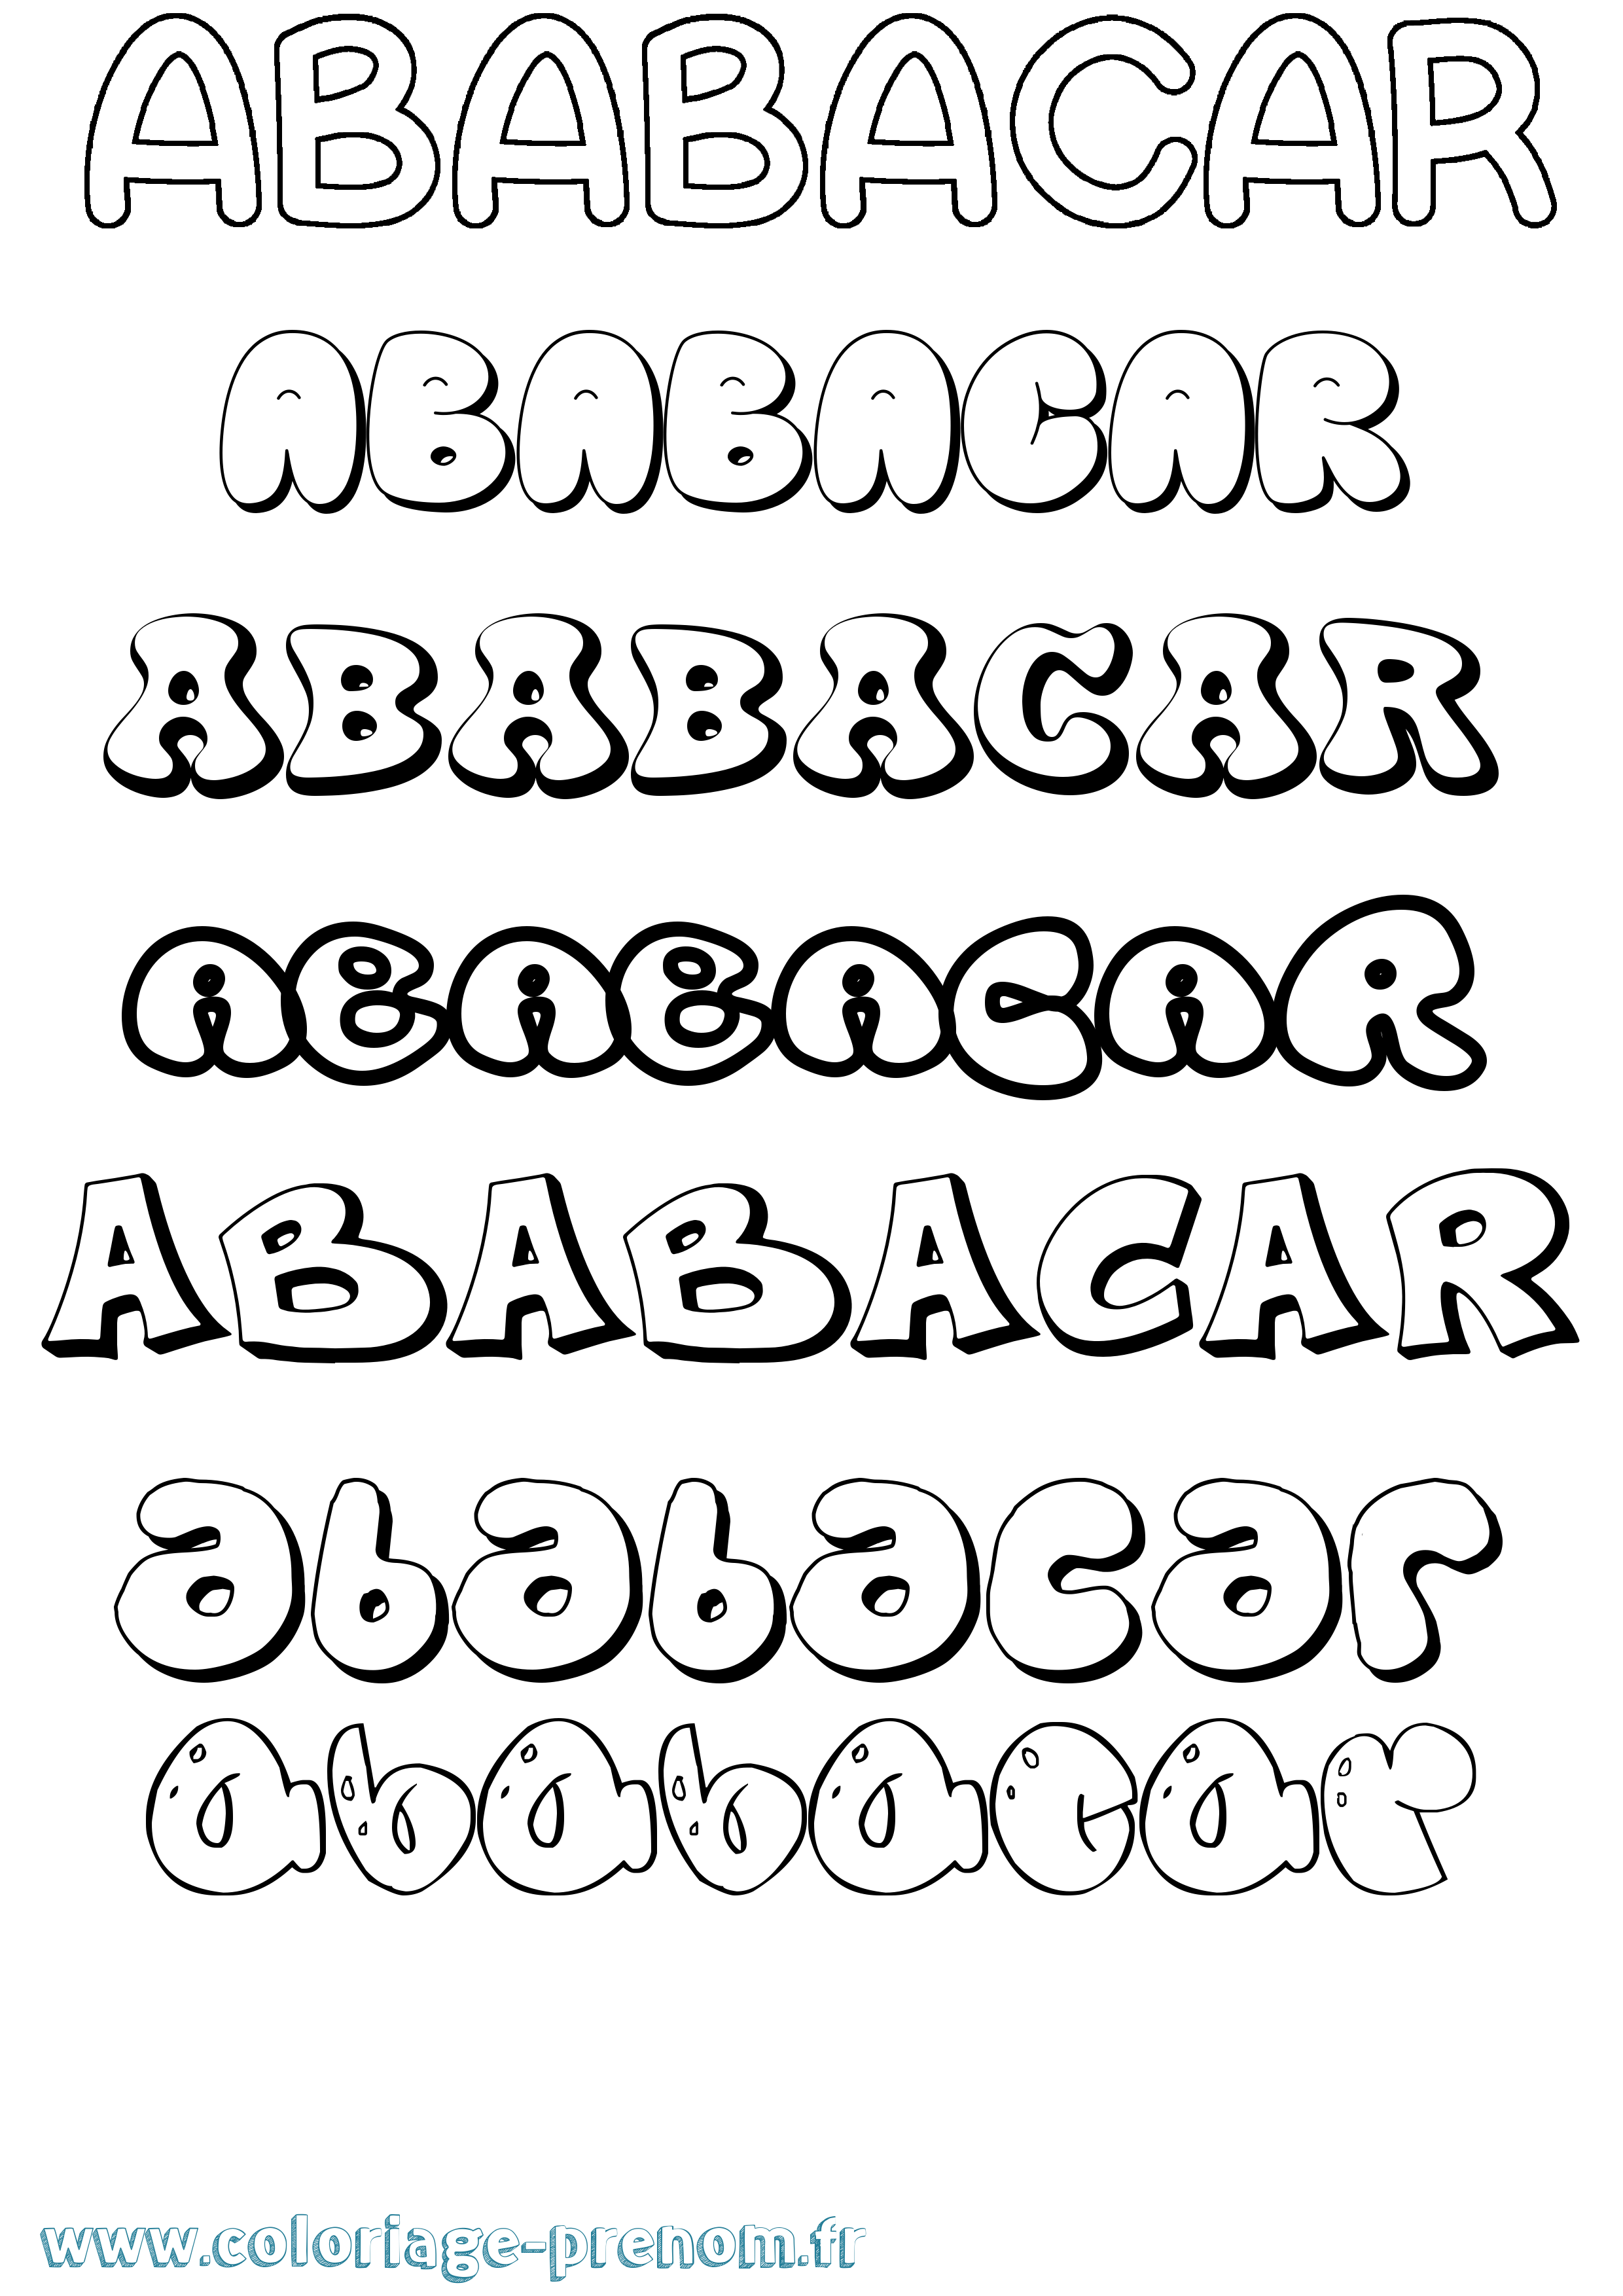 Coloriage prénom Ababacar Bubble